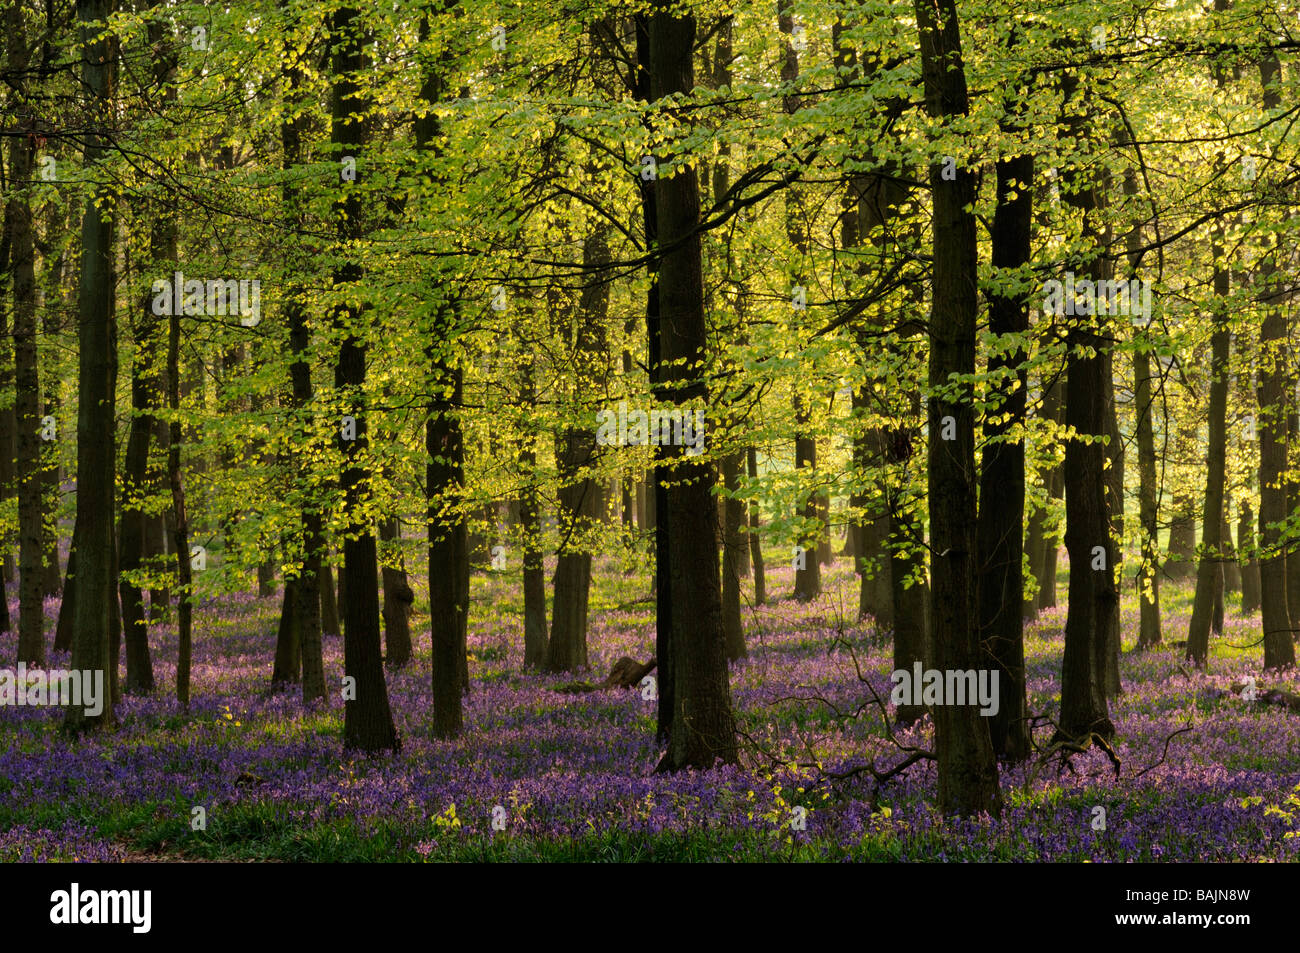 Dockey Wood ,Ashridge estate, Hertfordshire, England, UK Stock Photo